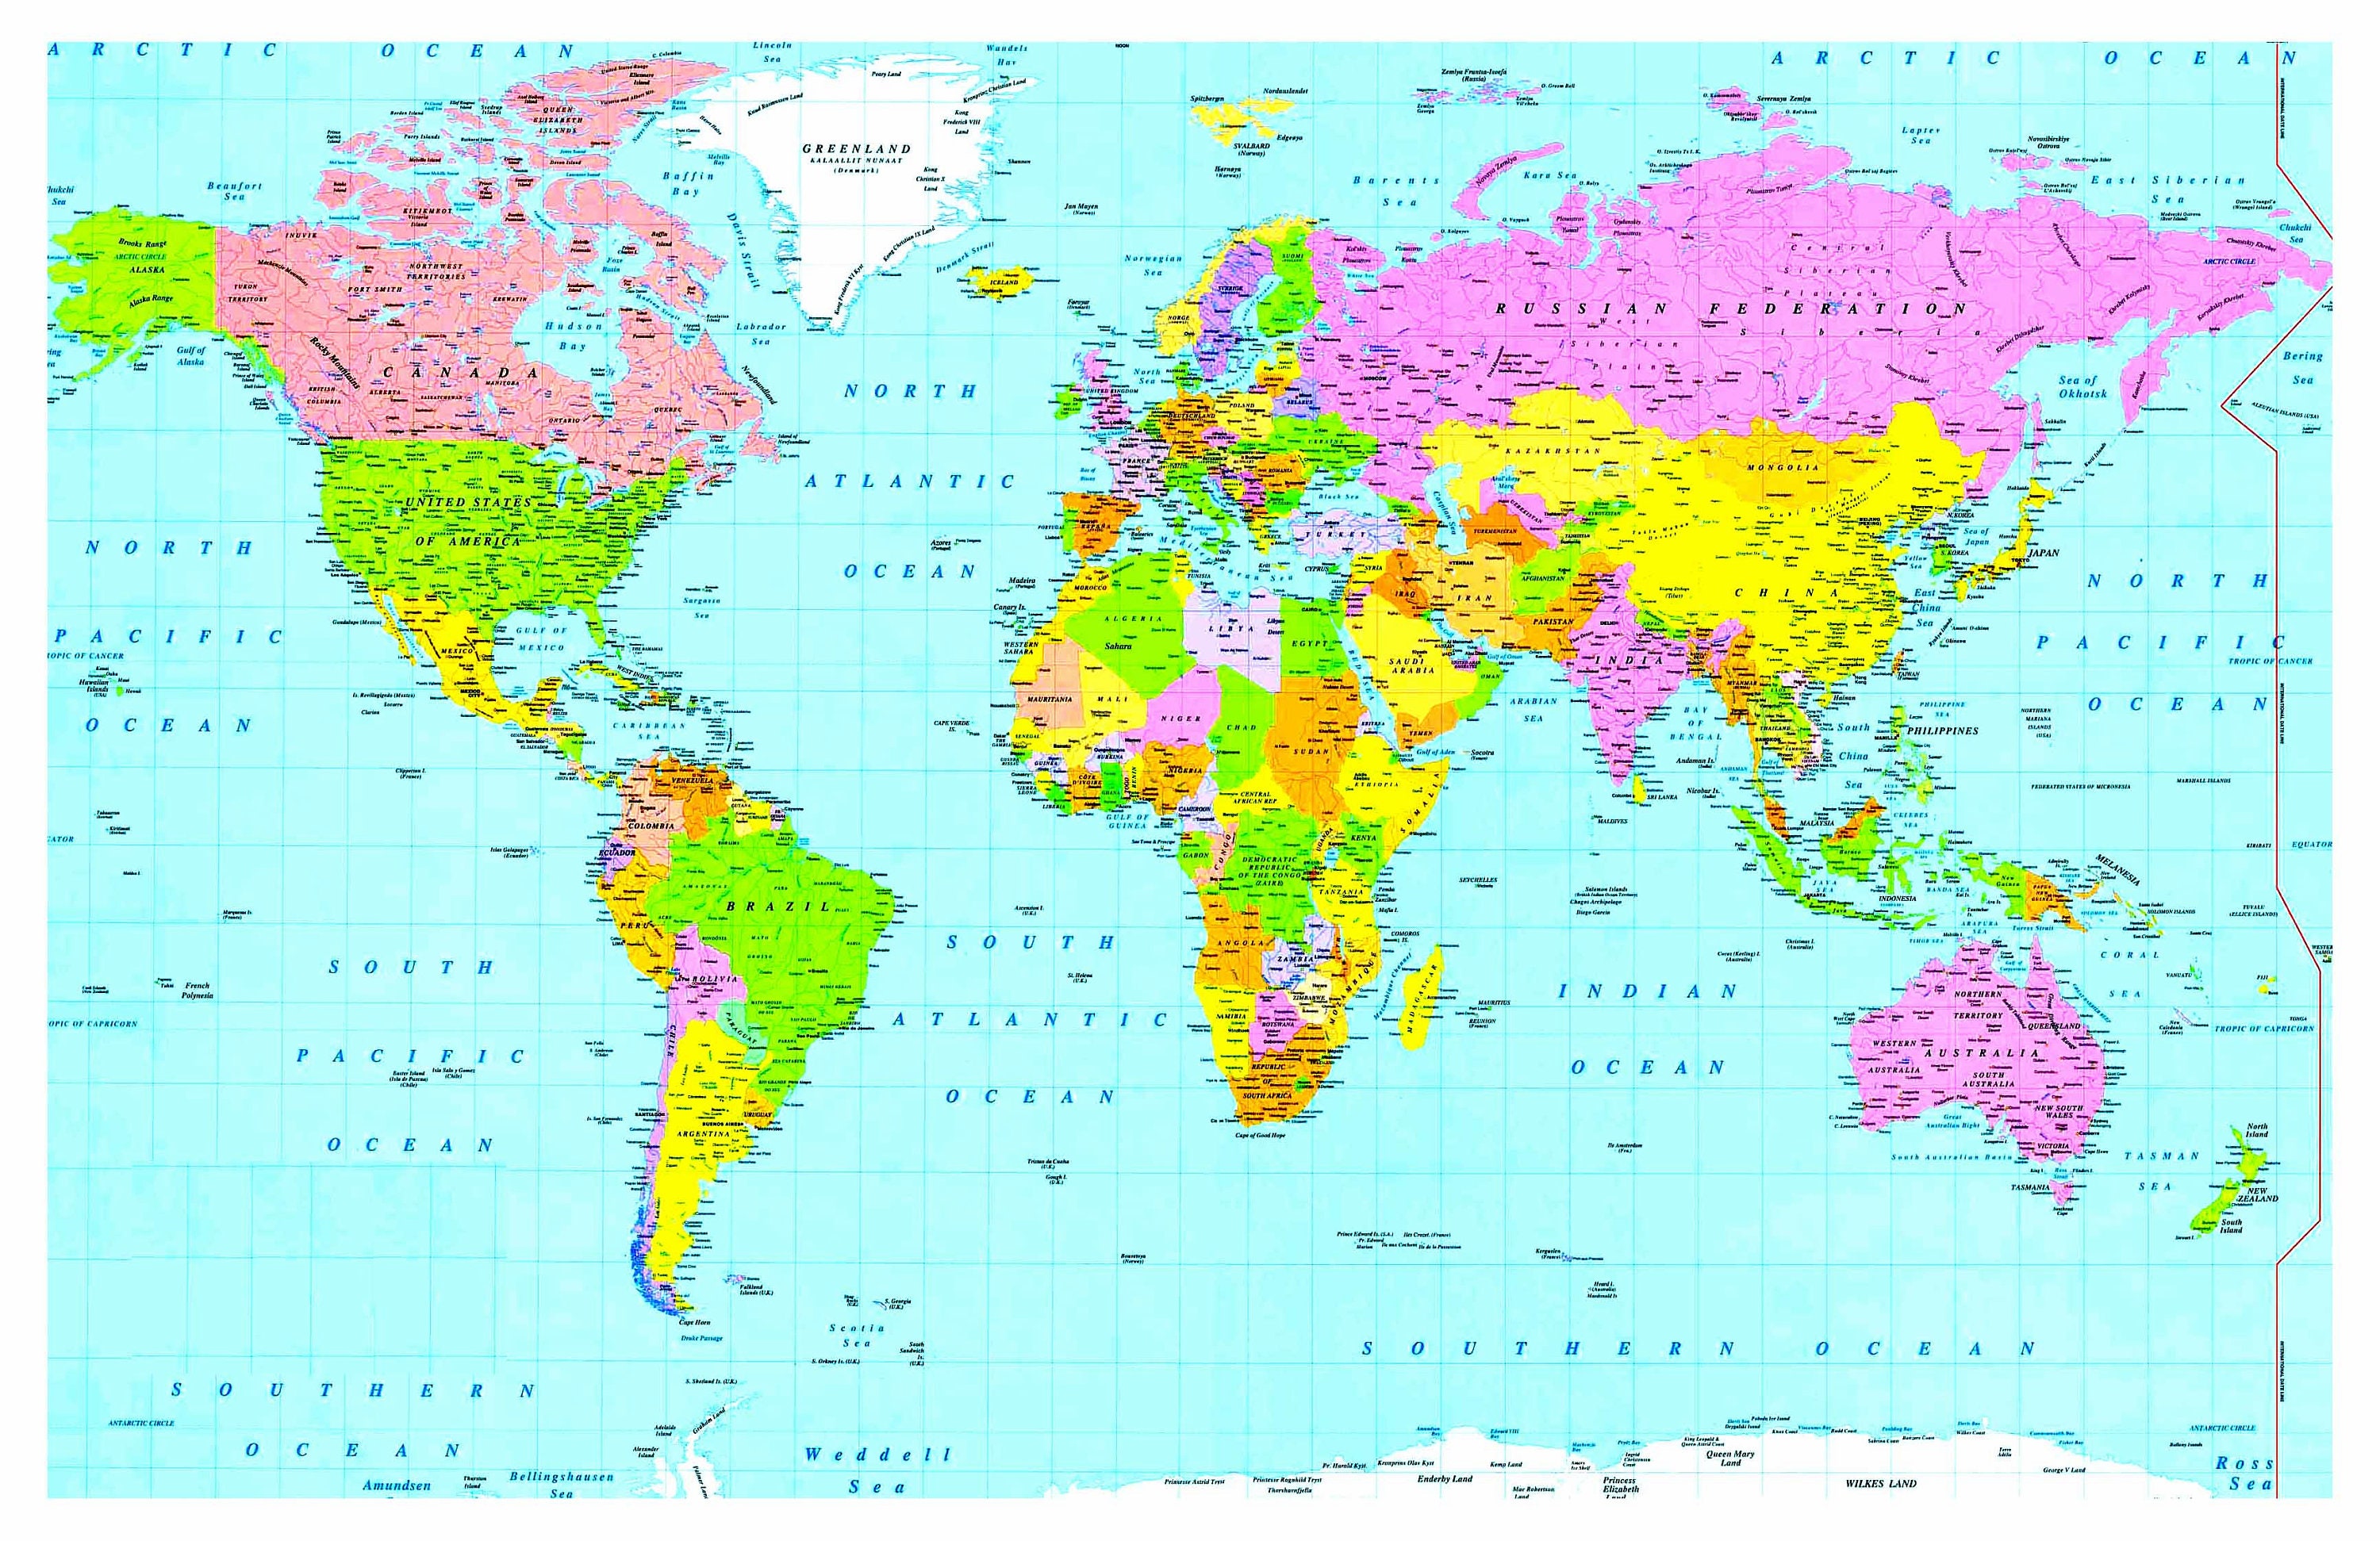 Laminated Wall Size World Maps